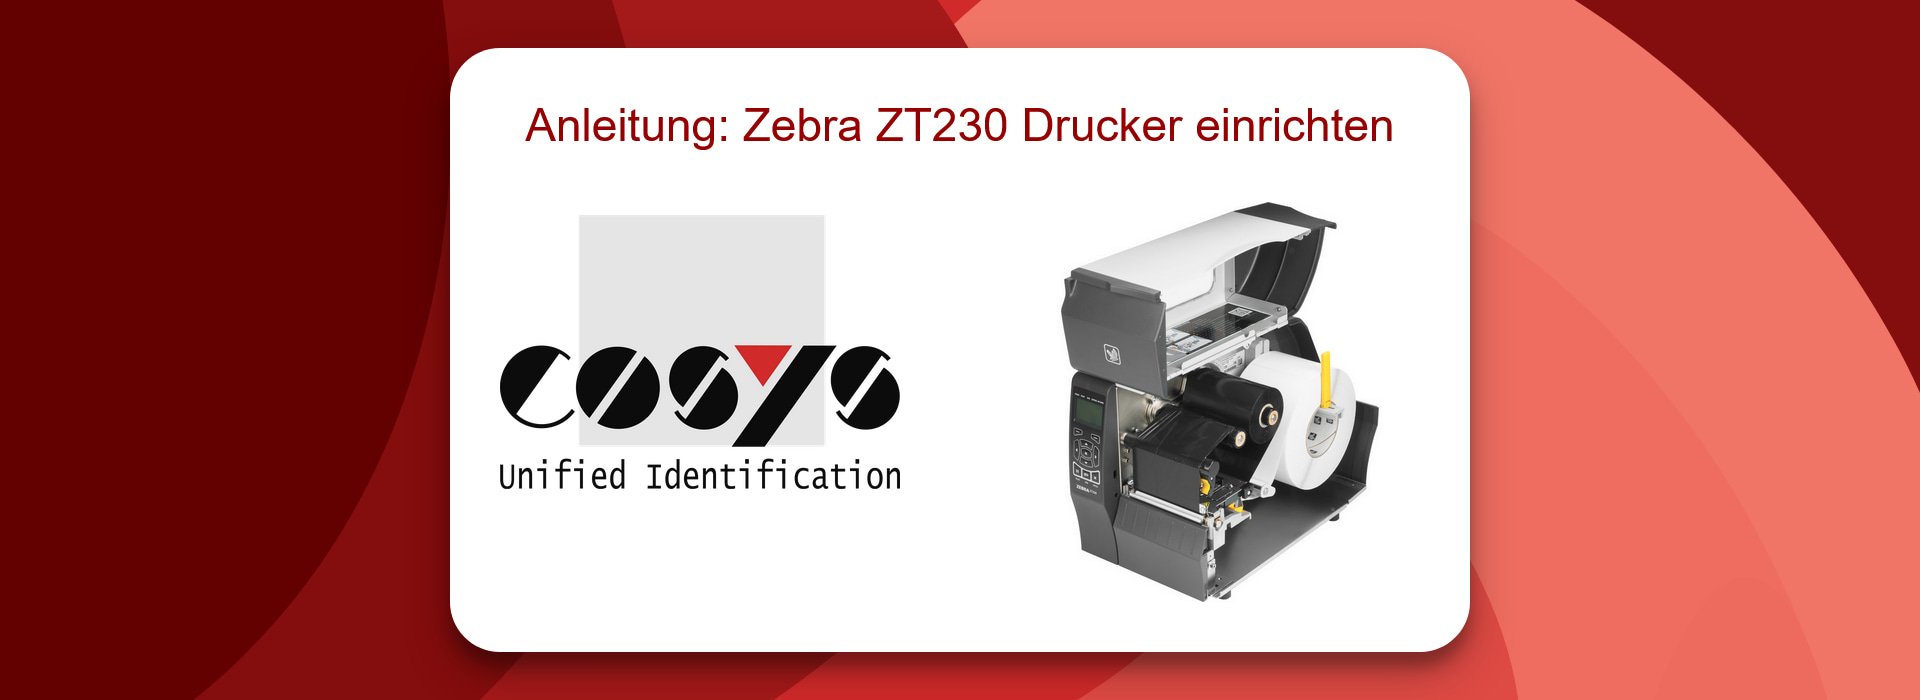 Anleitung: Zebra ZT230 Drucker einrichten